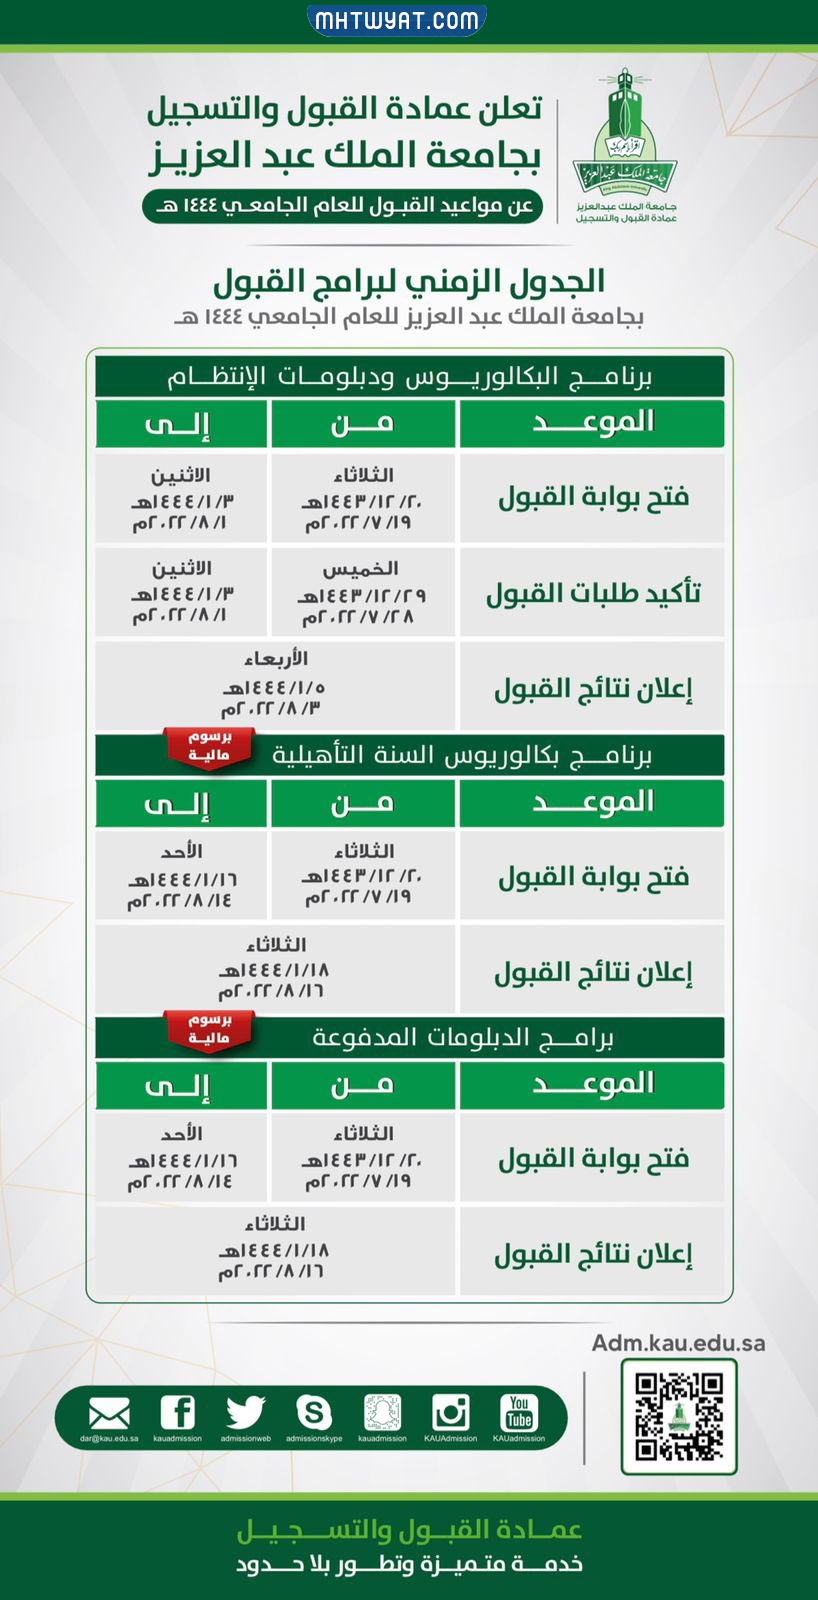 موعد التسجيل في جامعة الملك عبدالعزيز 1444